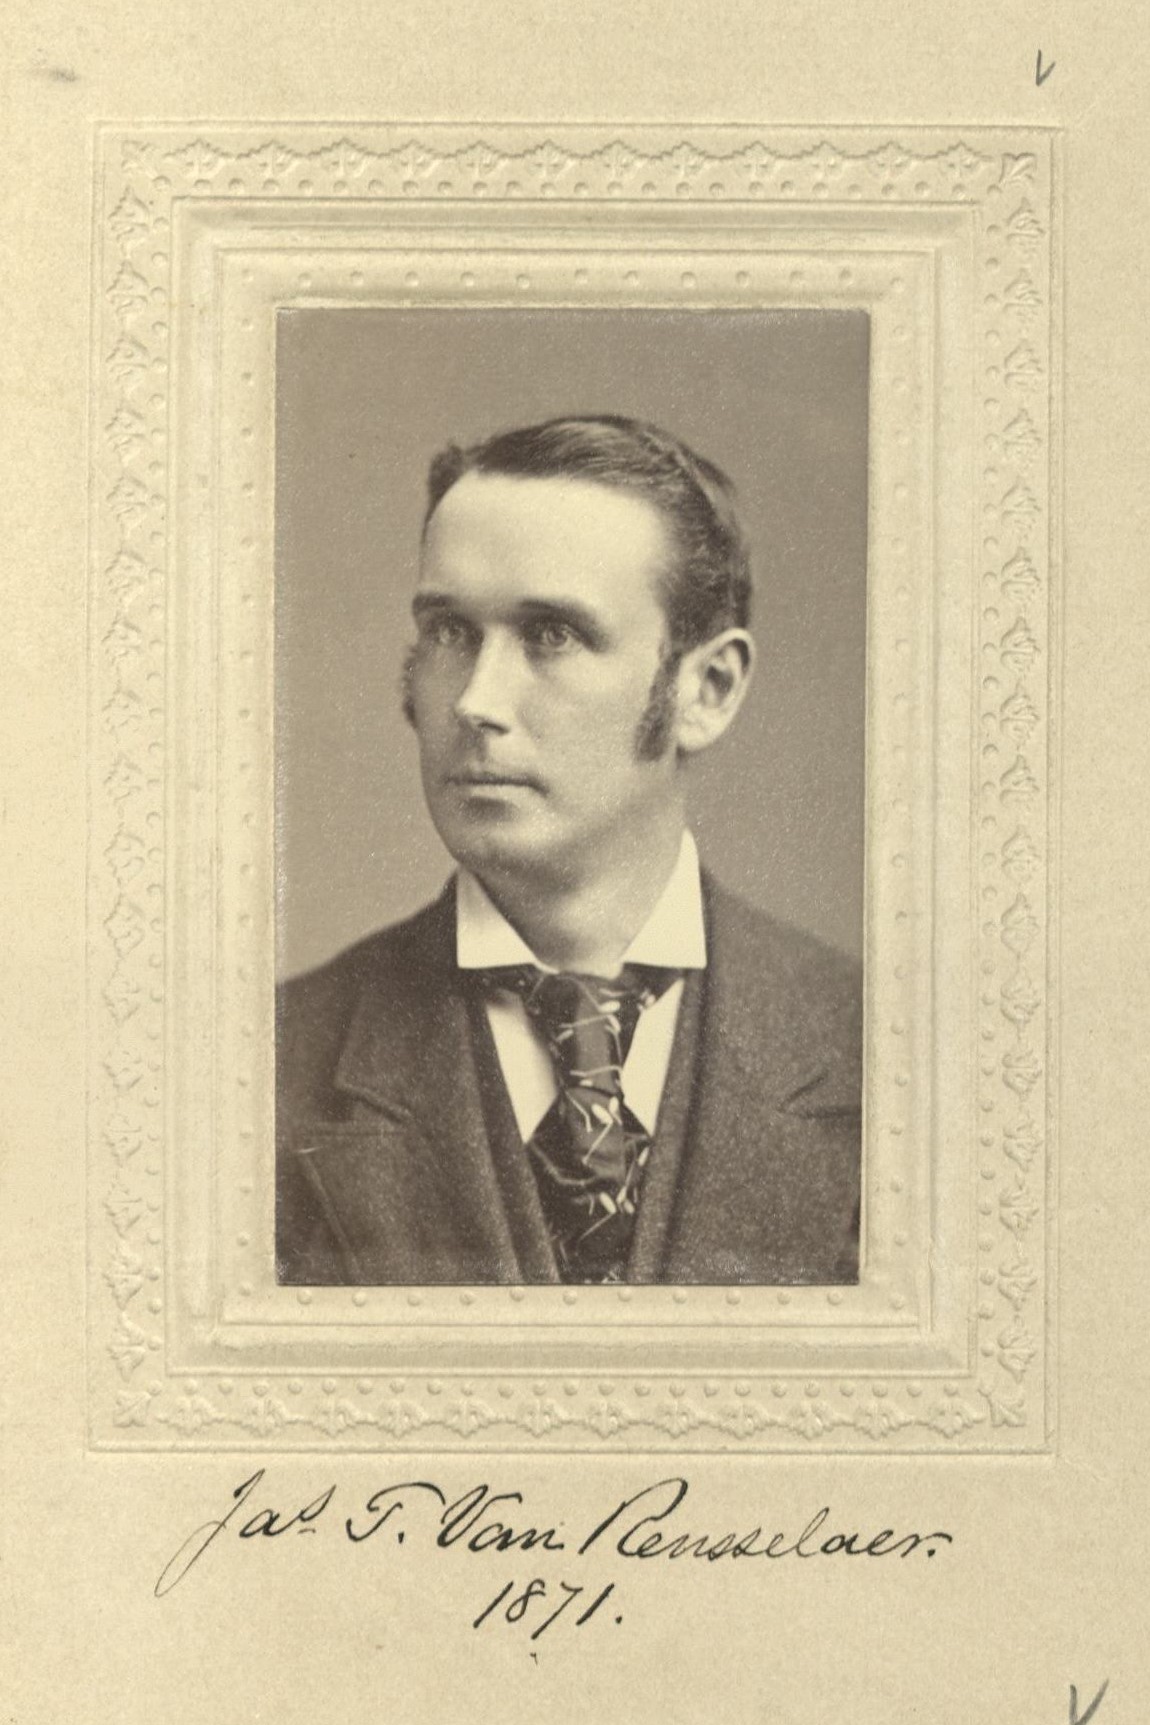 Member portrait of James T. Van Rensselaer